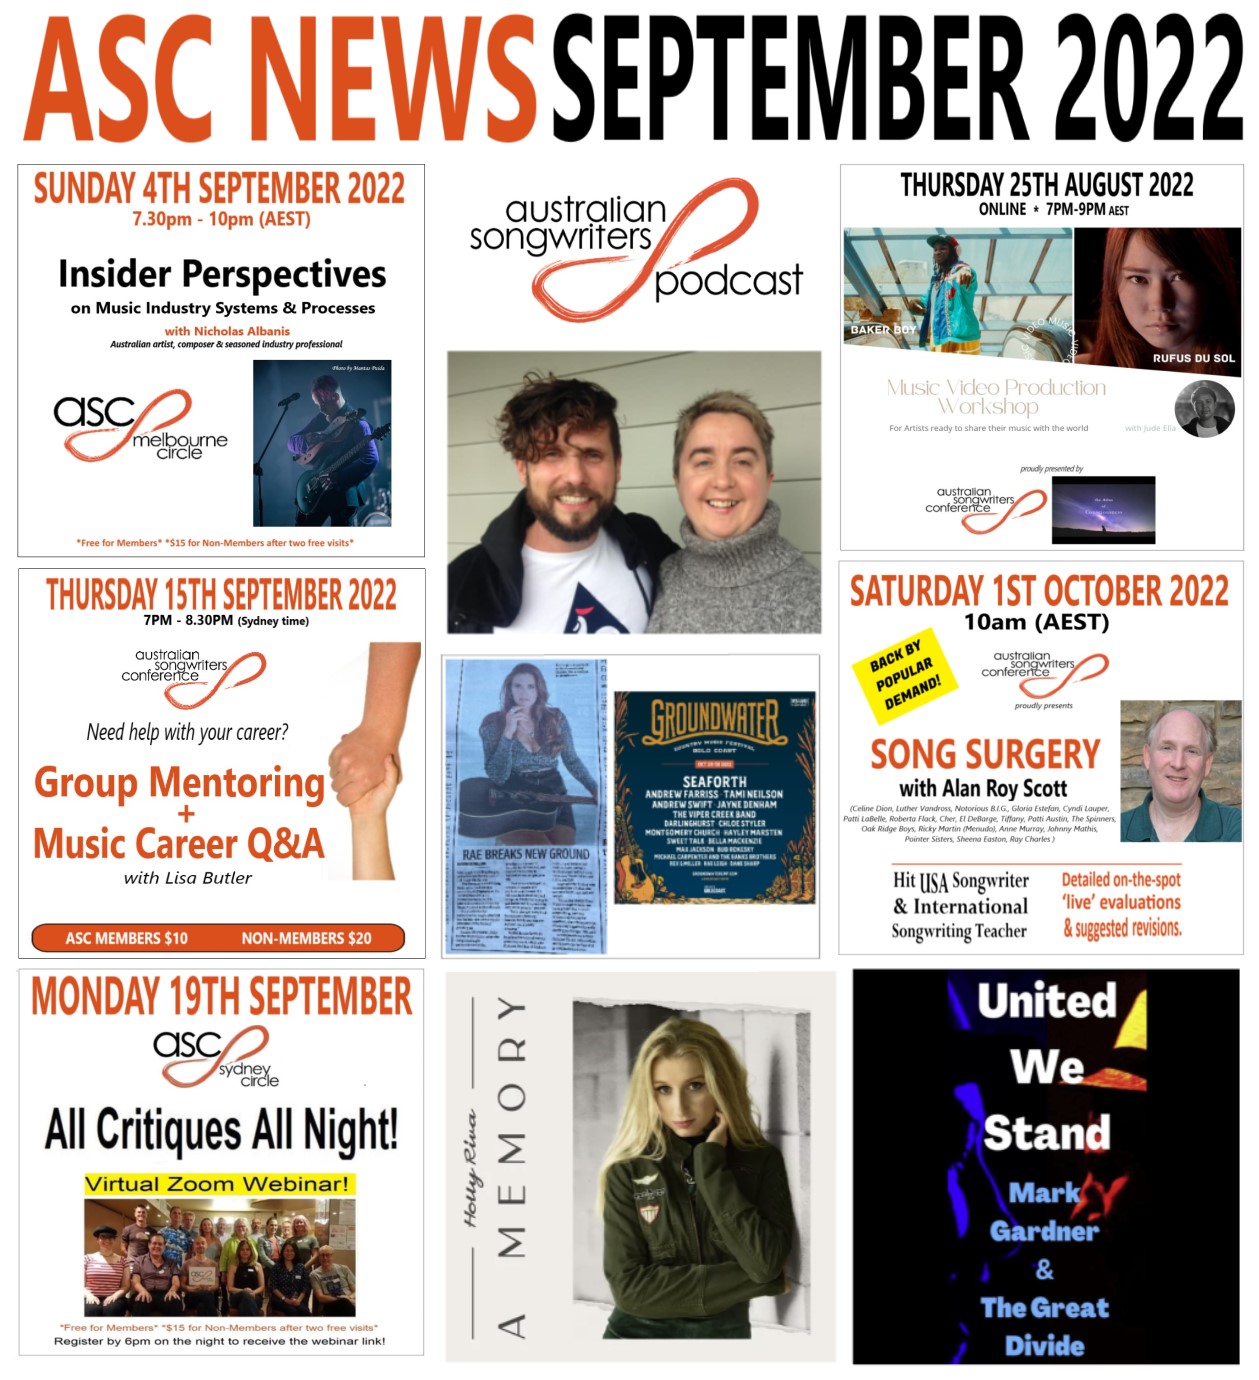 ASC NEWS - September 2022_social banner